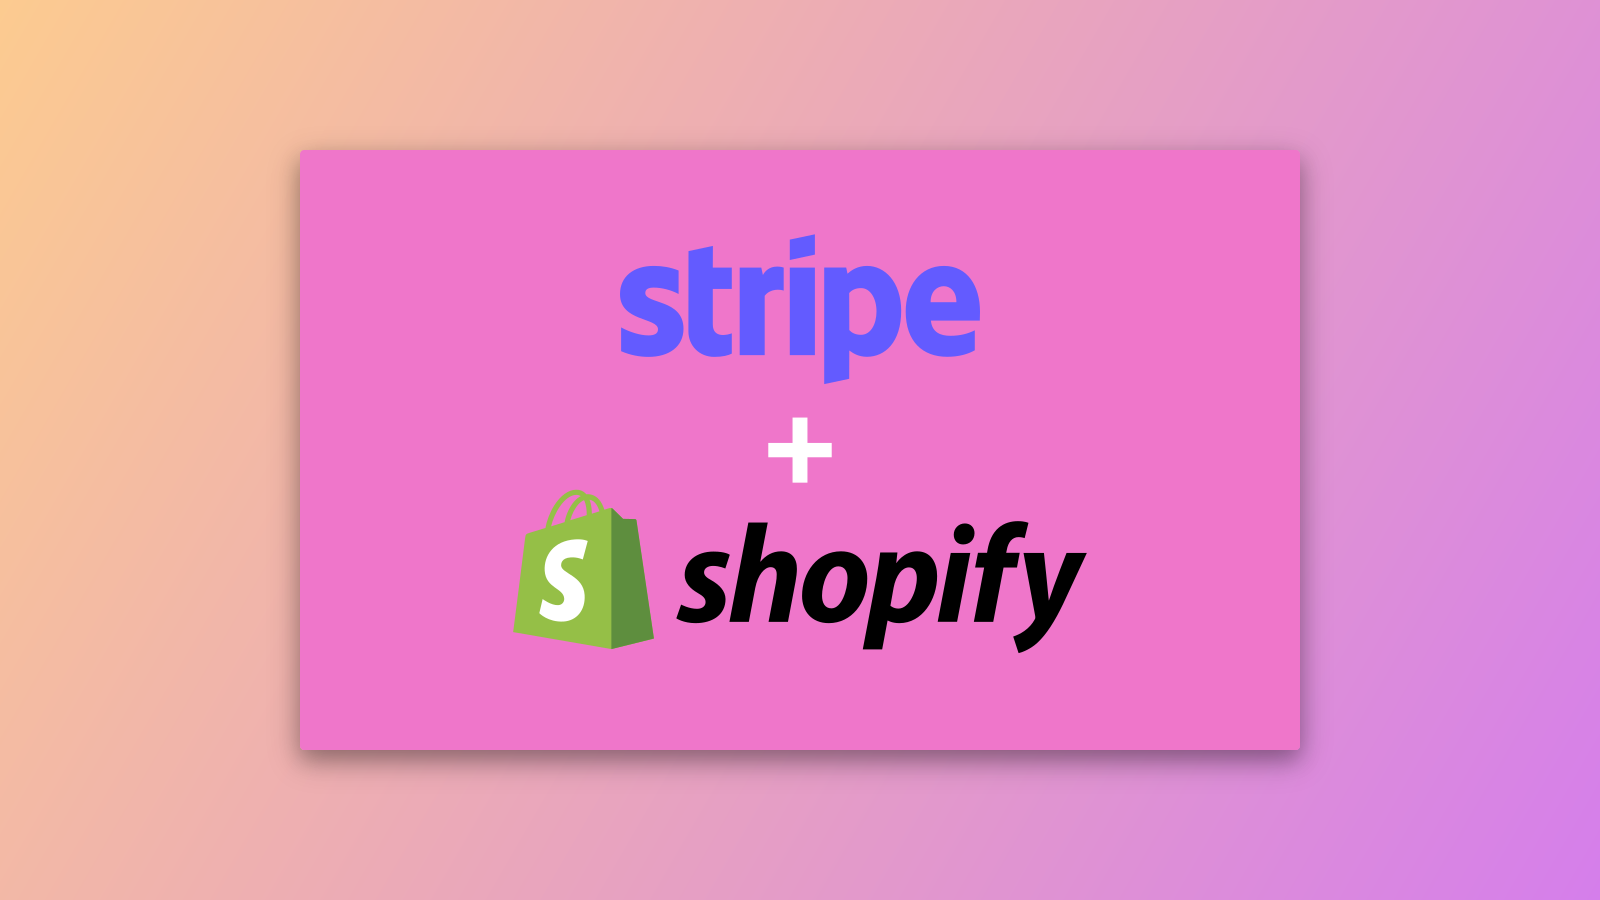 Ihren Stripe-Account in Ihrem Shopify Shop einrichten